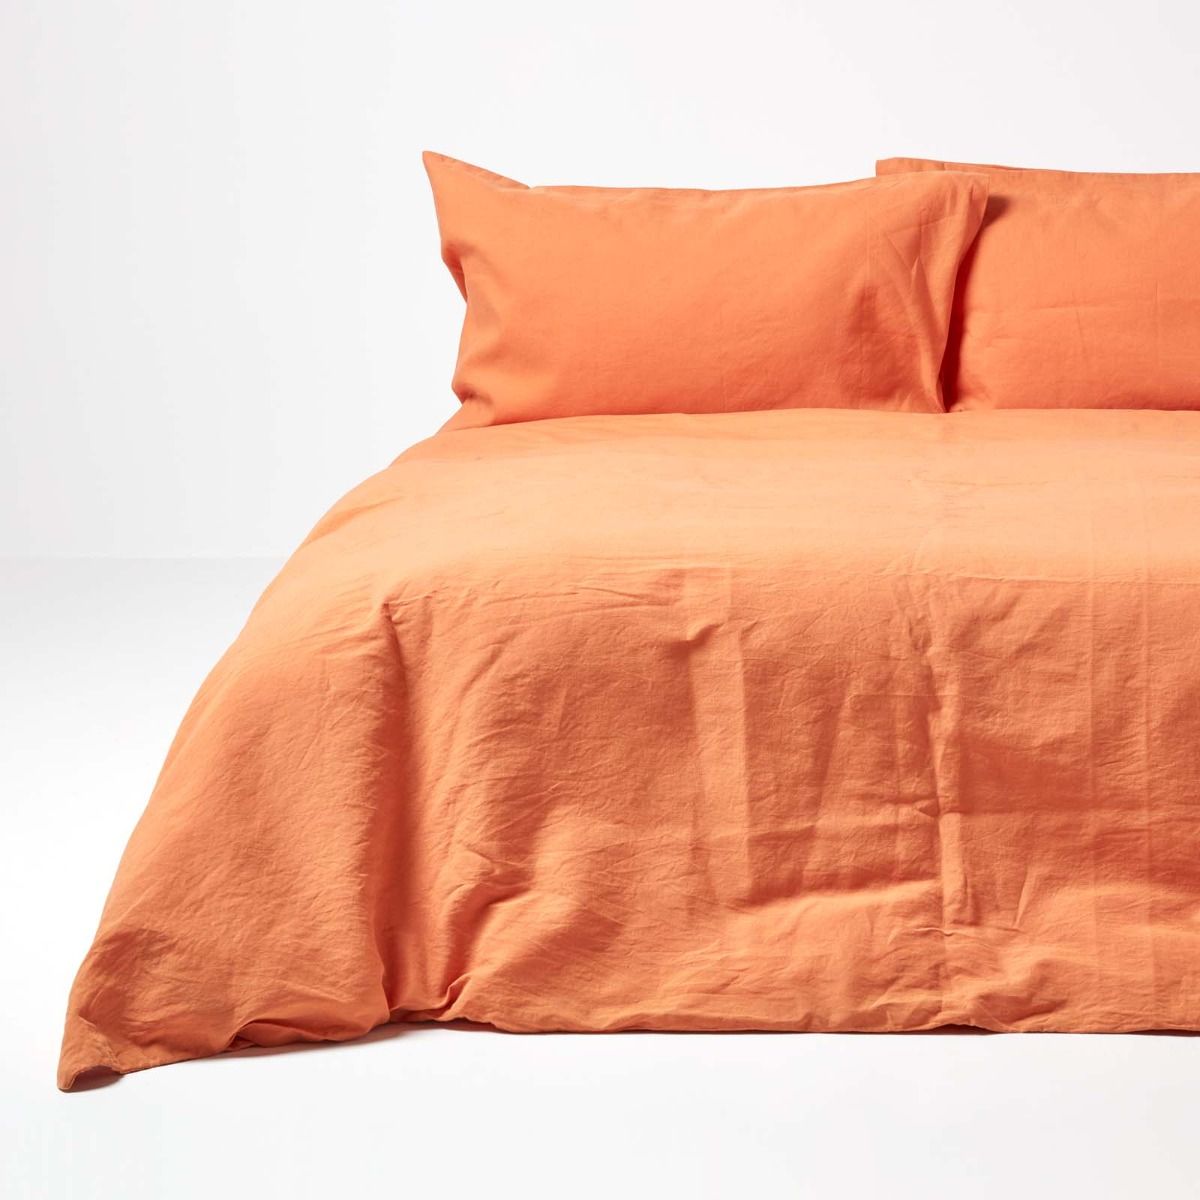 Burnt Orange European Linen Duvet Cover Set, Solid Orange Duvet Cover